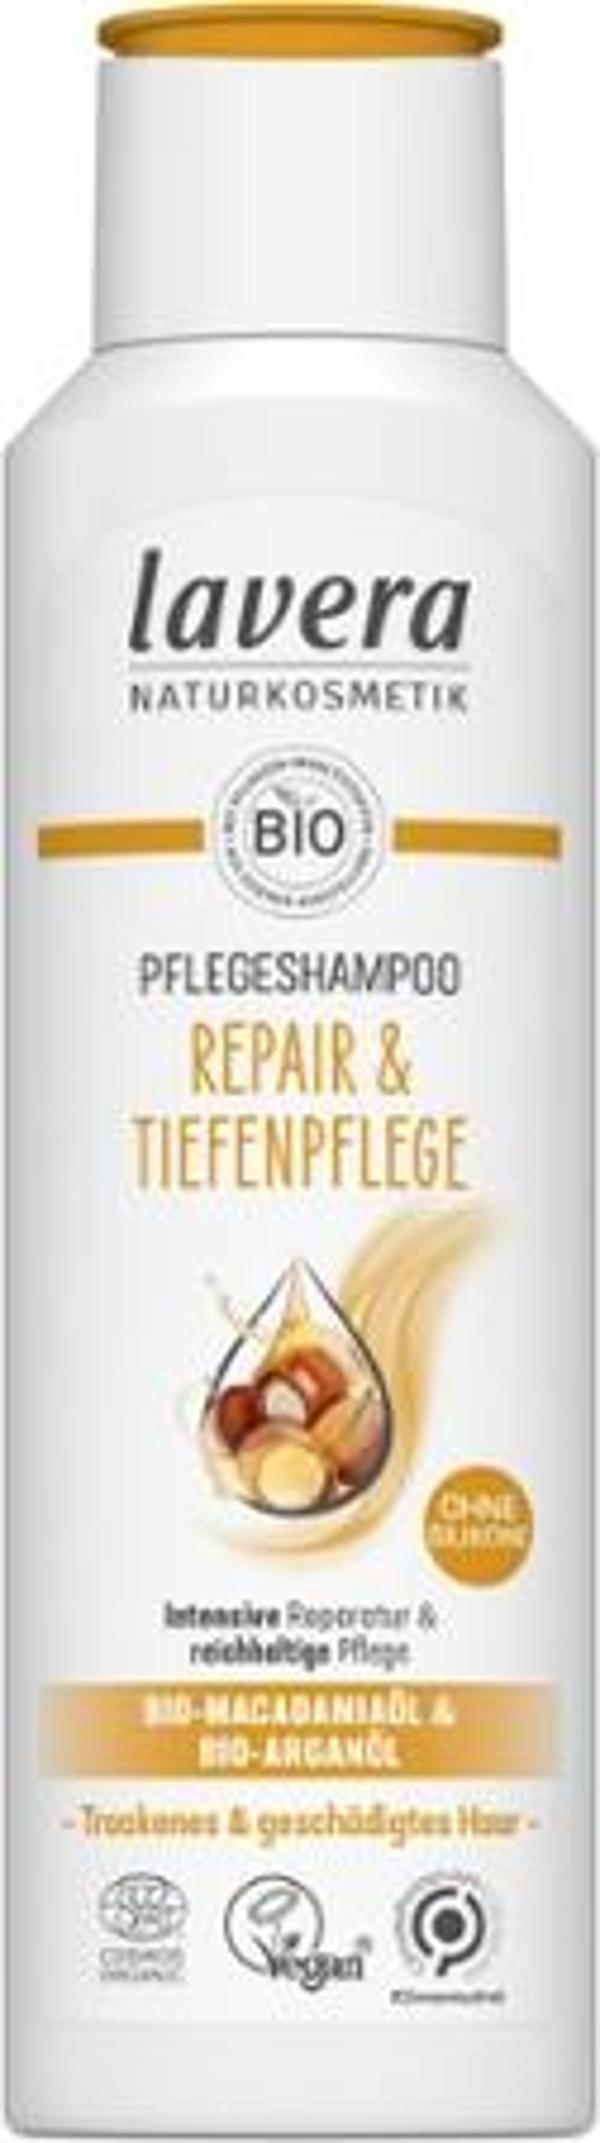 Produktfoto zu Lavera Shampoo Repair und Pflege - 250ml